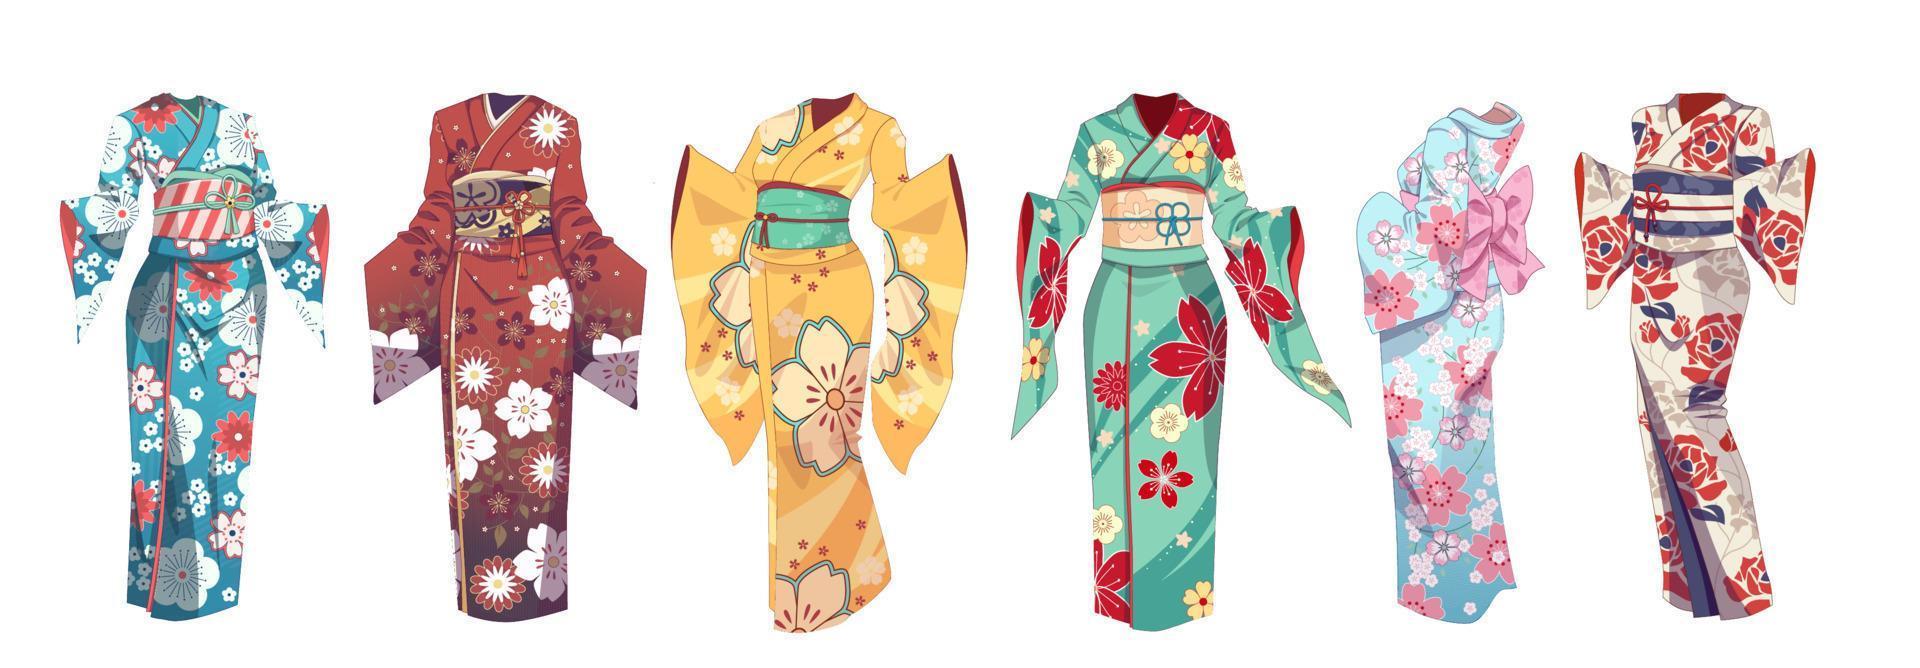 conjunto de ropa tradicional asiática, kimono japonés. ropa de verano - yukata. ilustración vectorial sobre fondo aislado vector